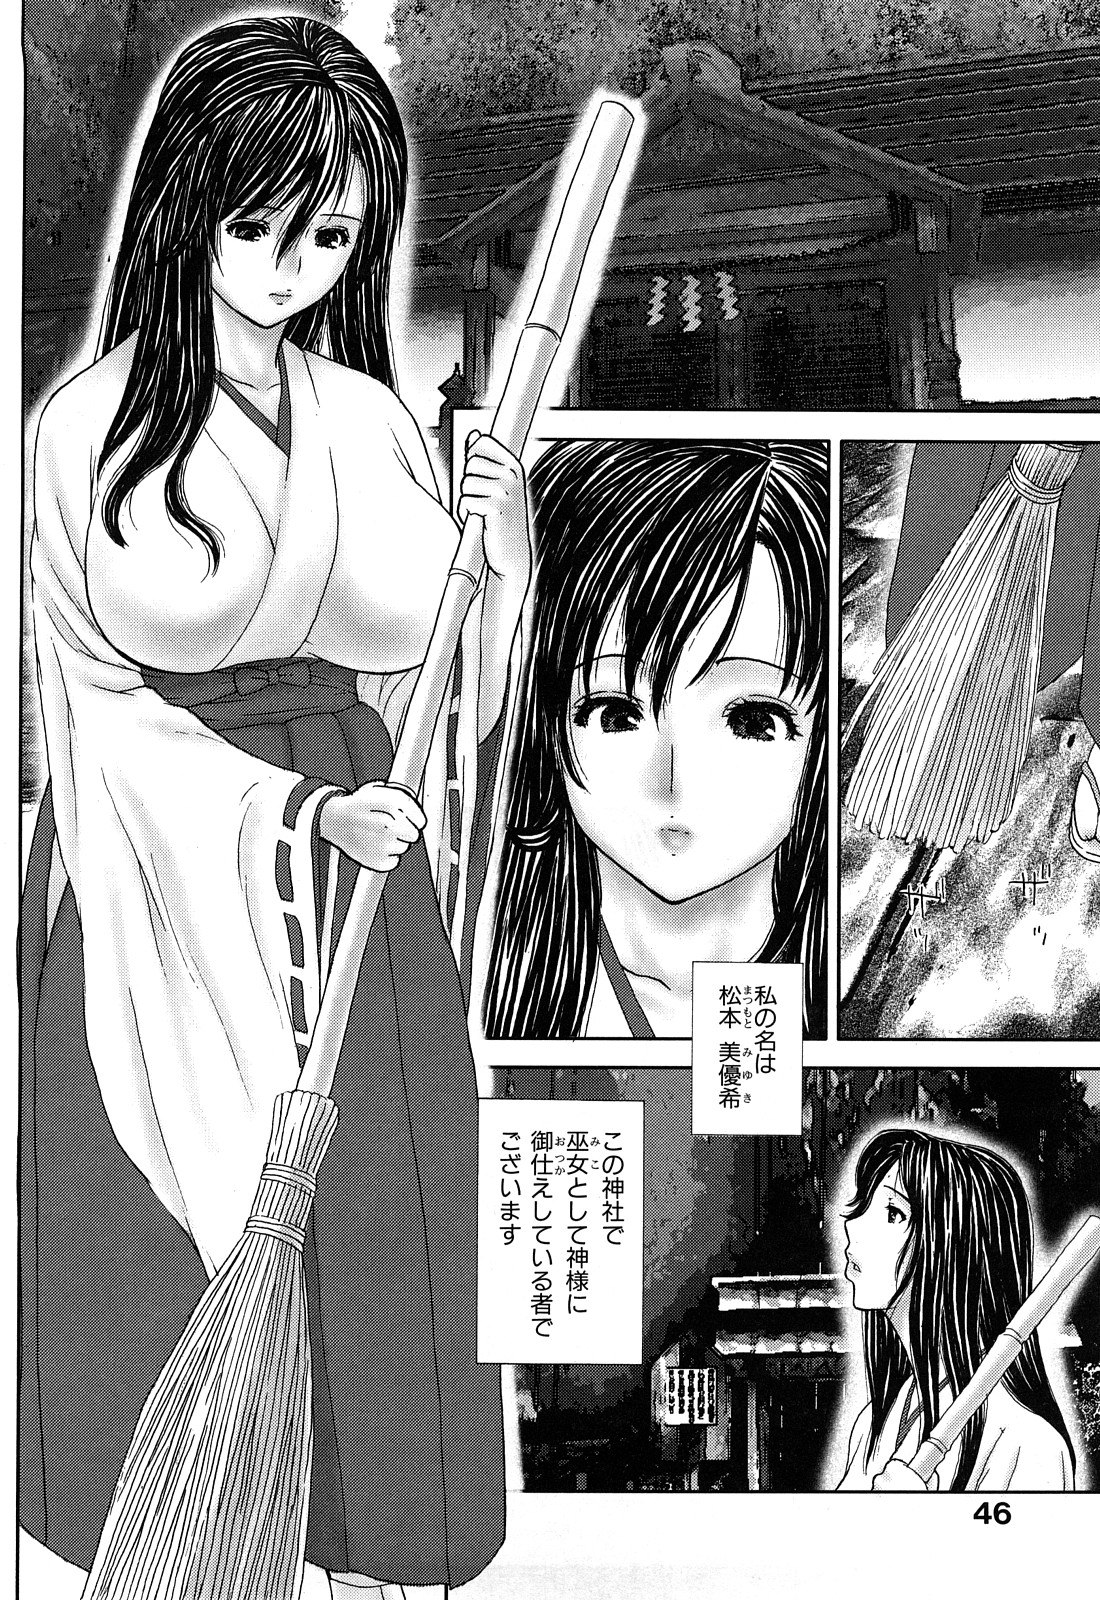 [EXTREME] Tsuma No Shizuku ~Nikuyome Miyuki 29 sai~ page 48 full